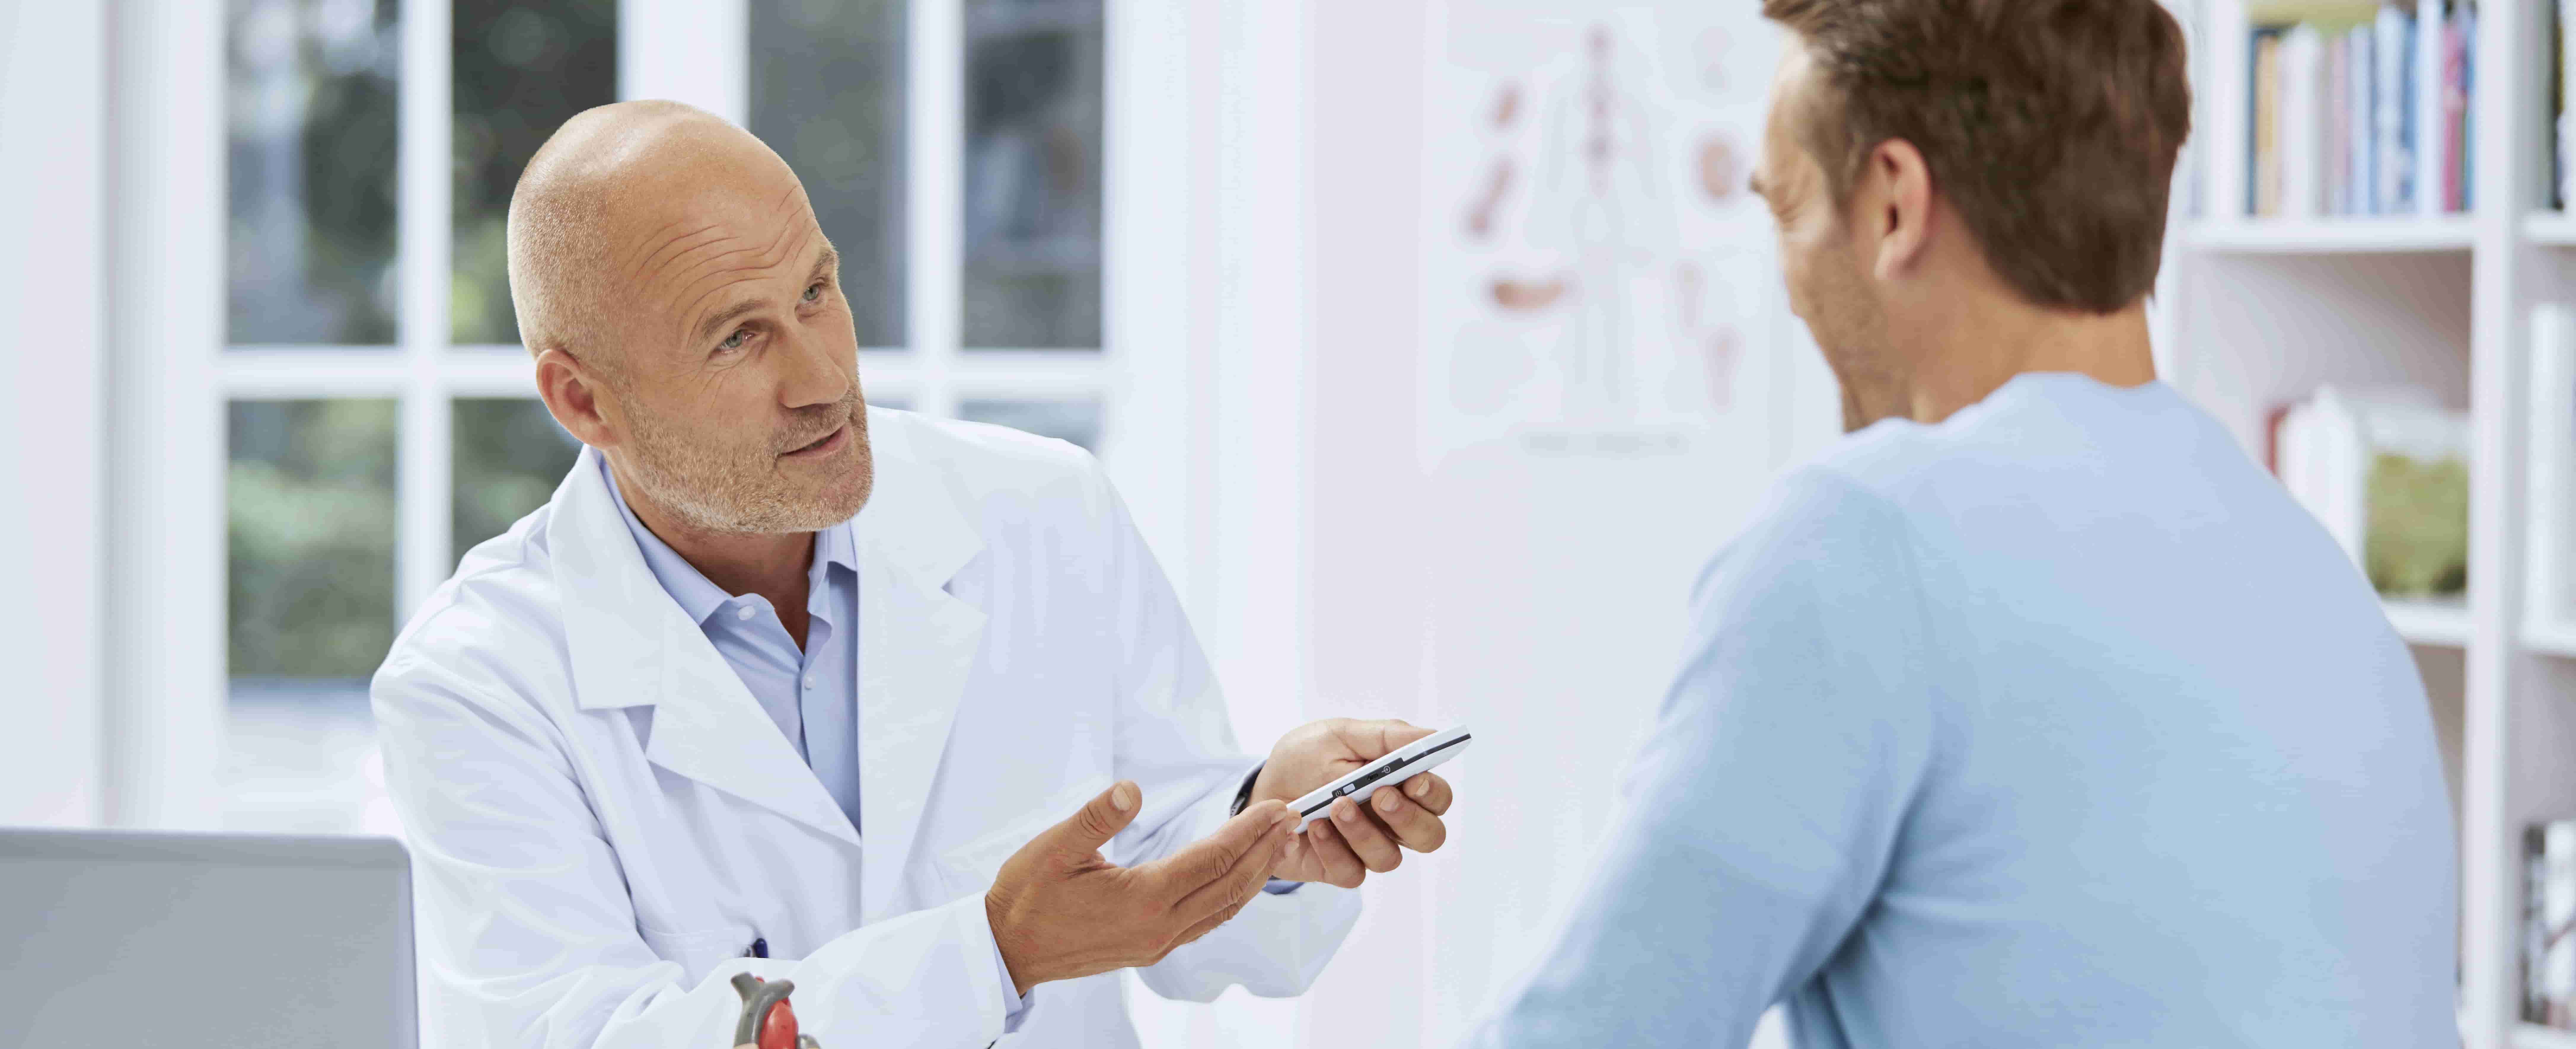 Foto de um médico em primeiro plano, branco, em ambiente hospitalar, mostrando a um homem branco, de perfil, um dispositivo semelhante a um smartphone